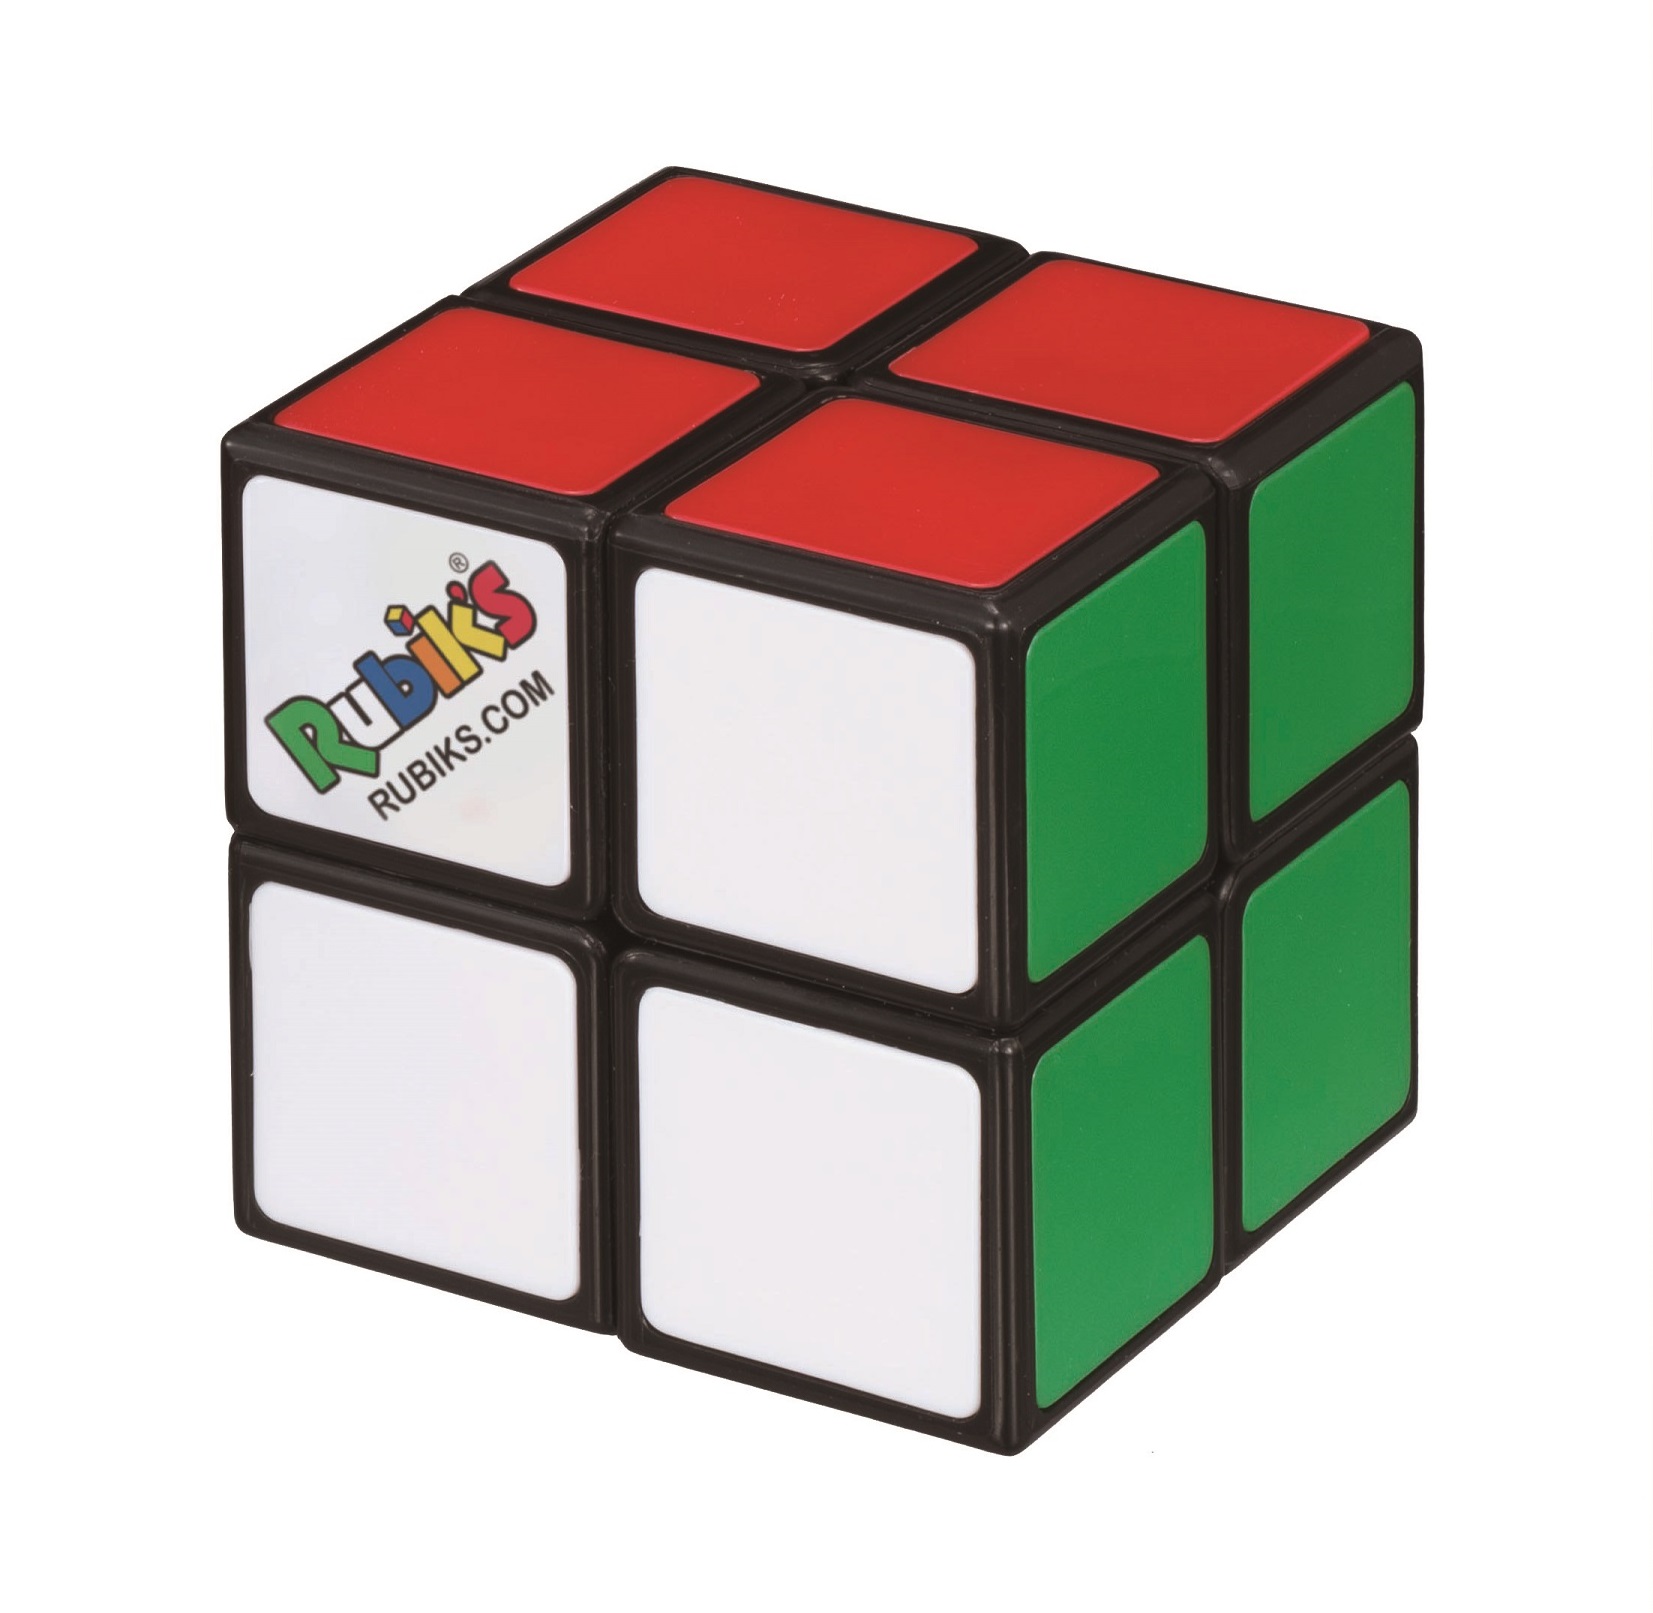  ルービックキューブ2×2 ver.2.1【公式ライセンス商品】